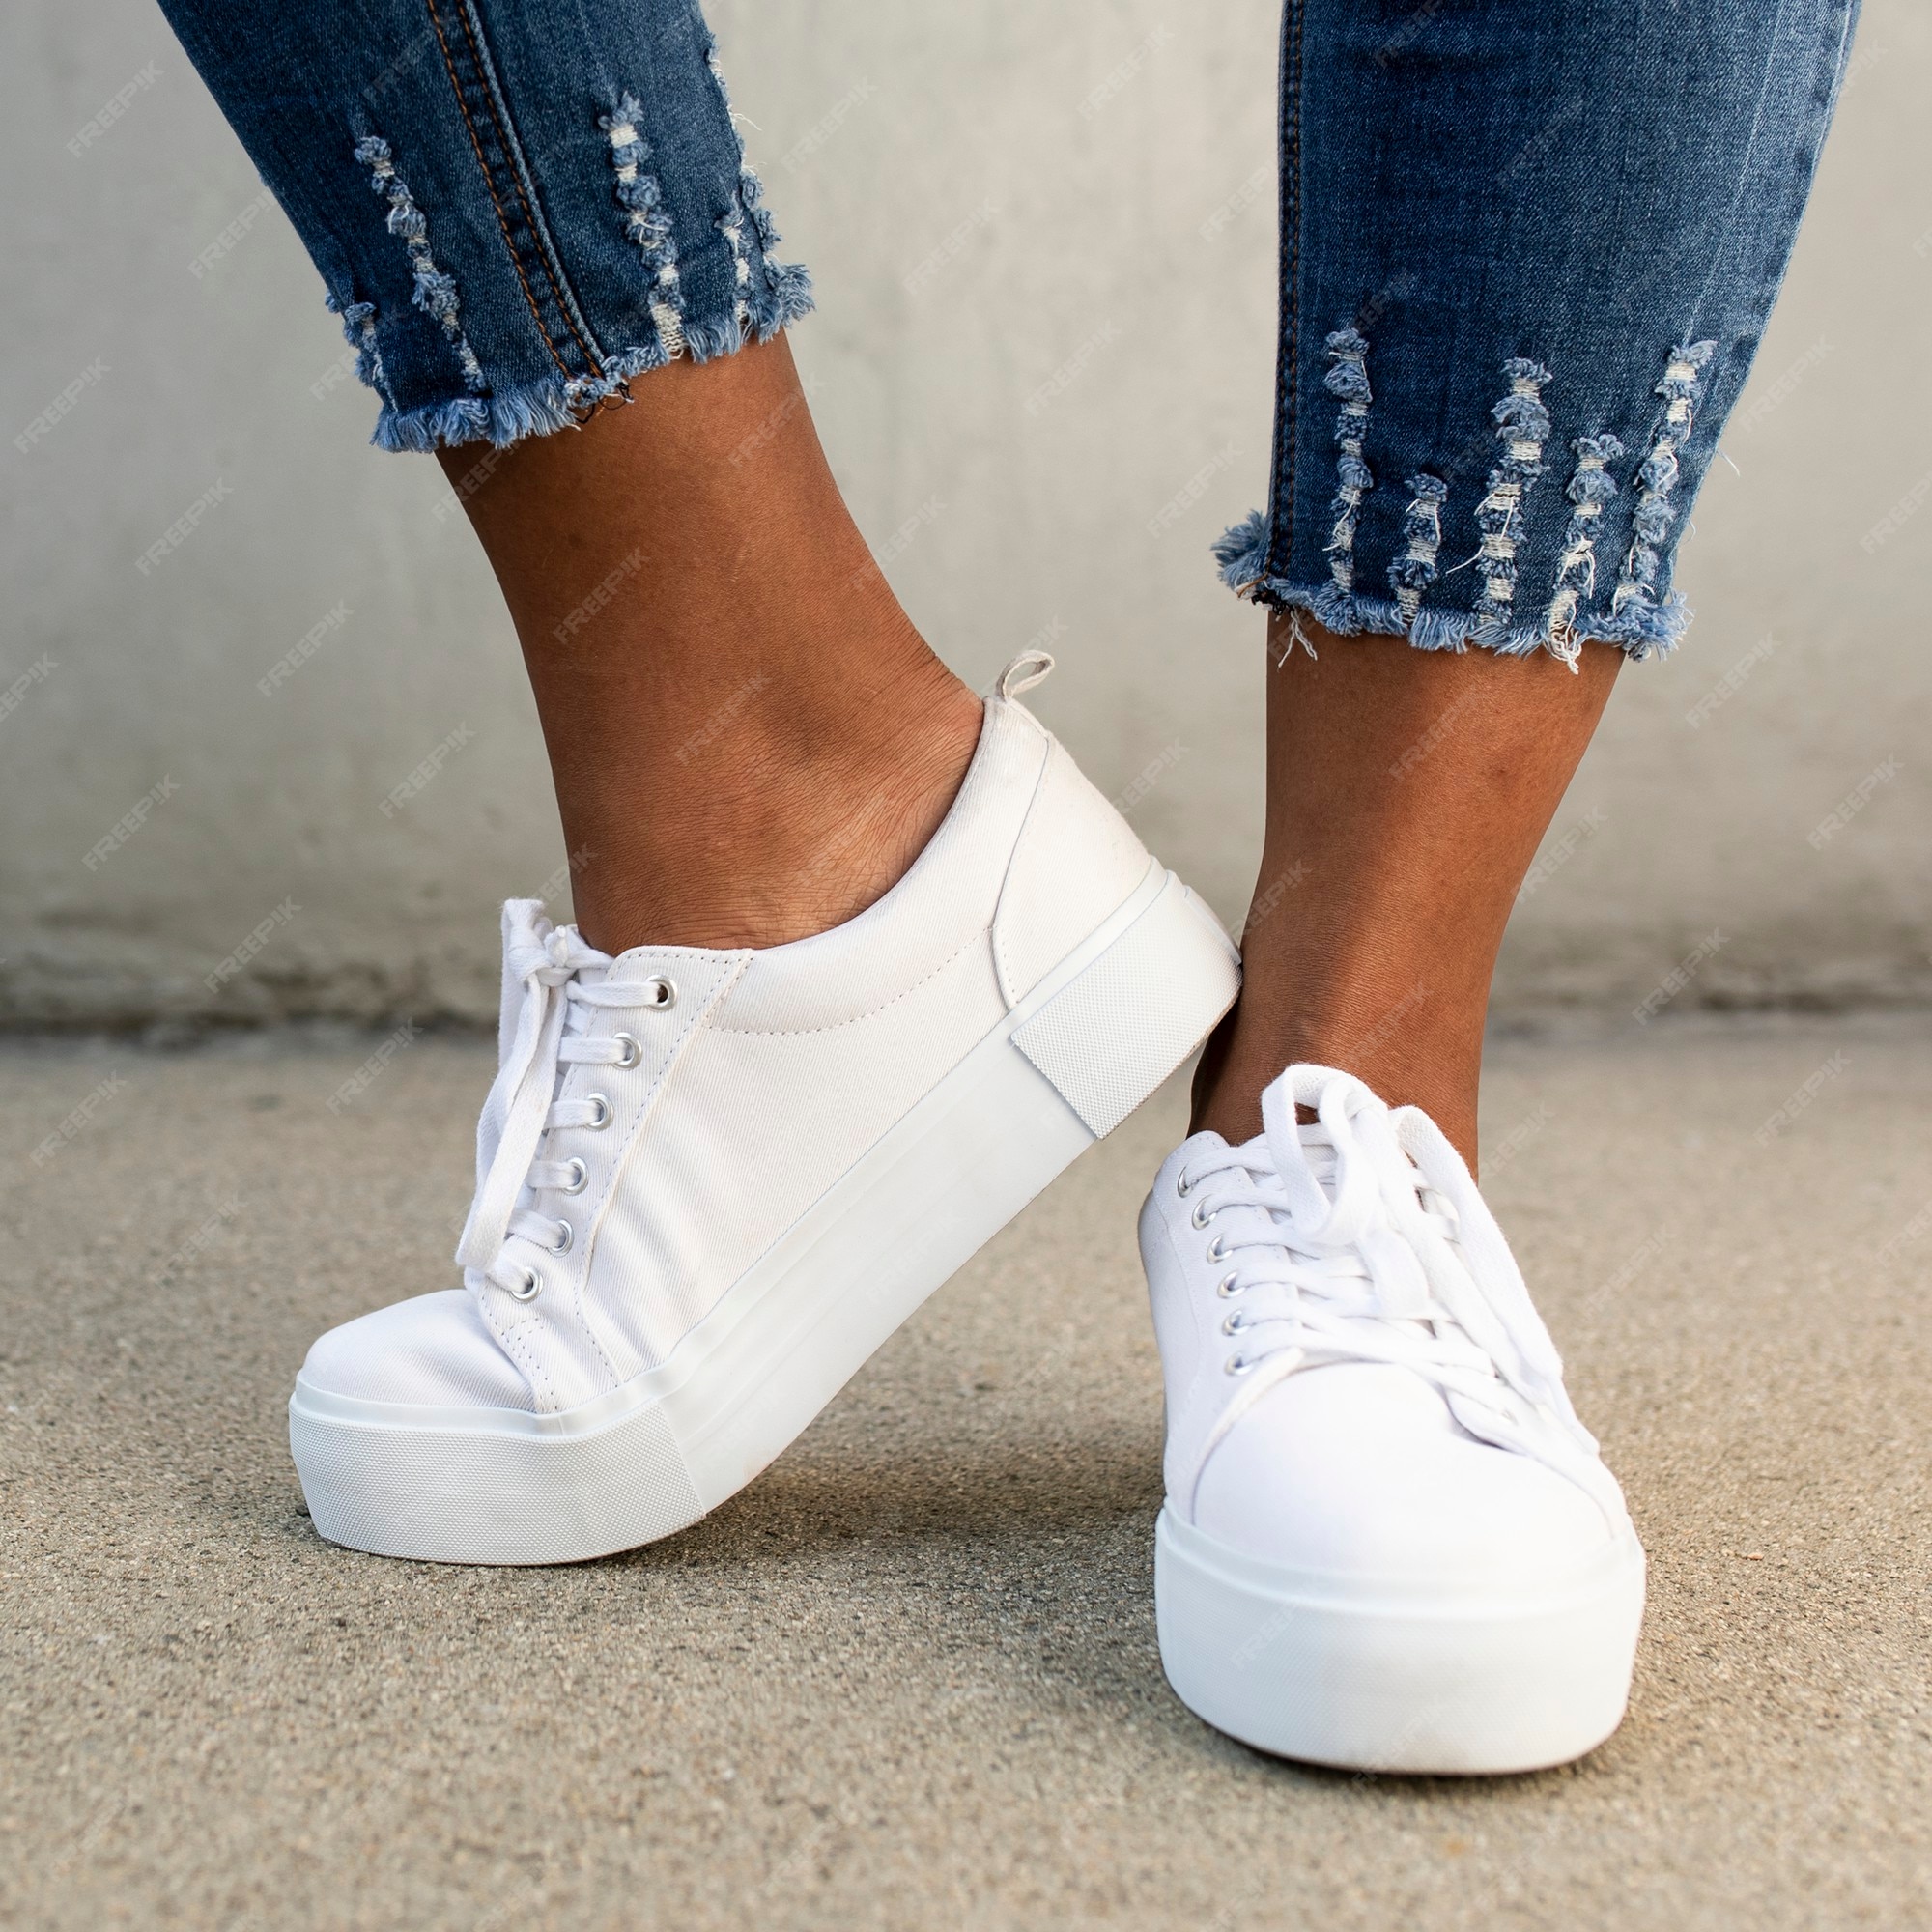 Zapatillas lona blancas zapatos de mujer ropa sesión Foto